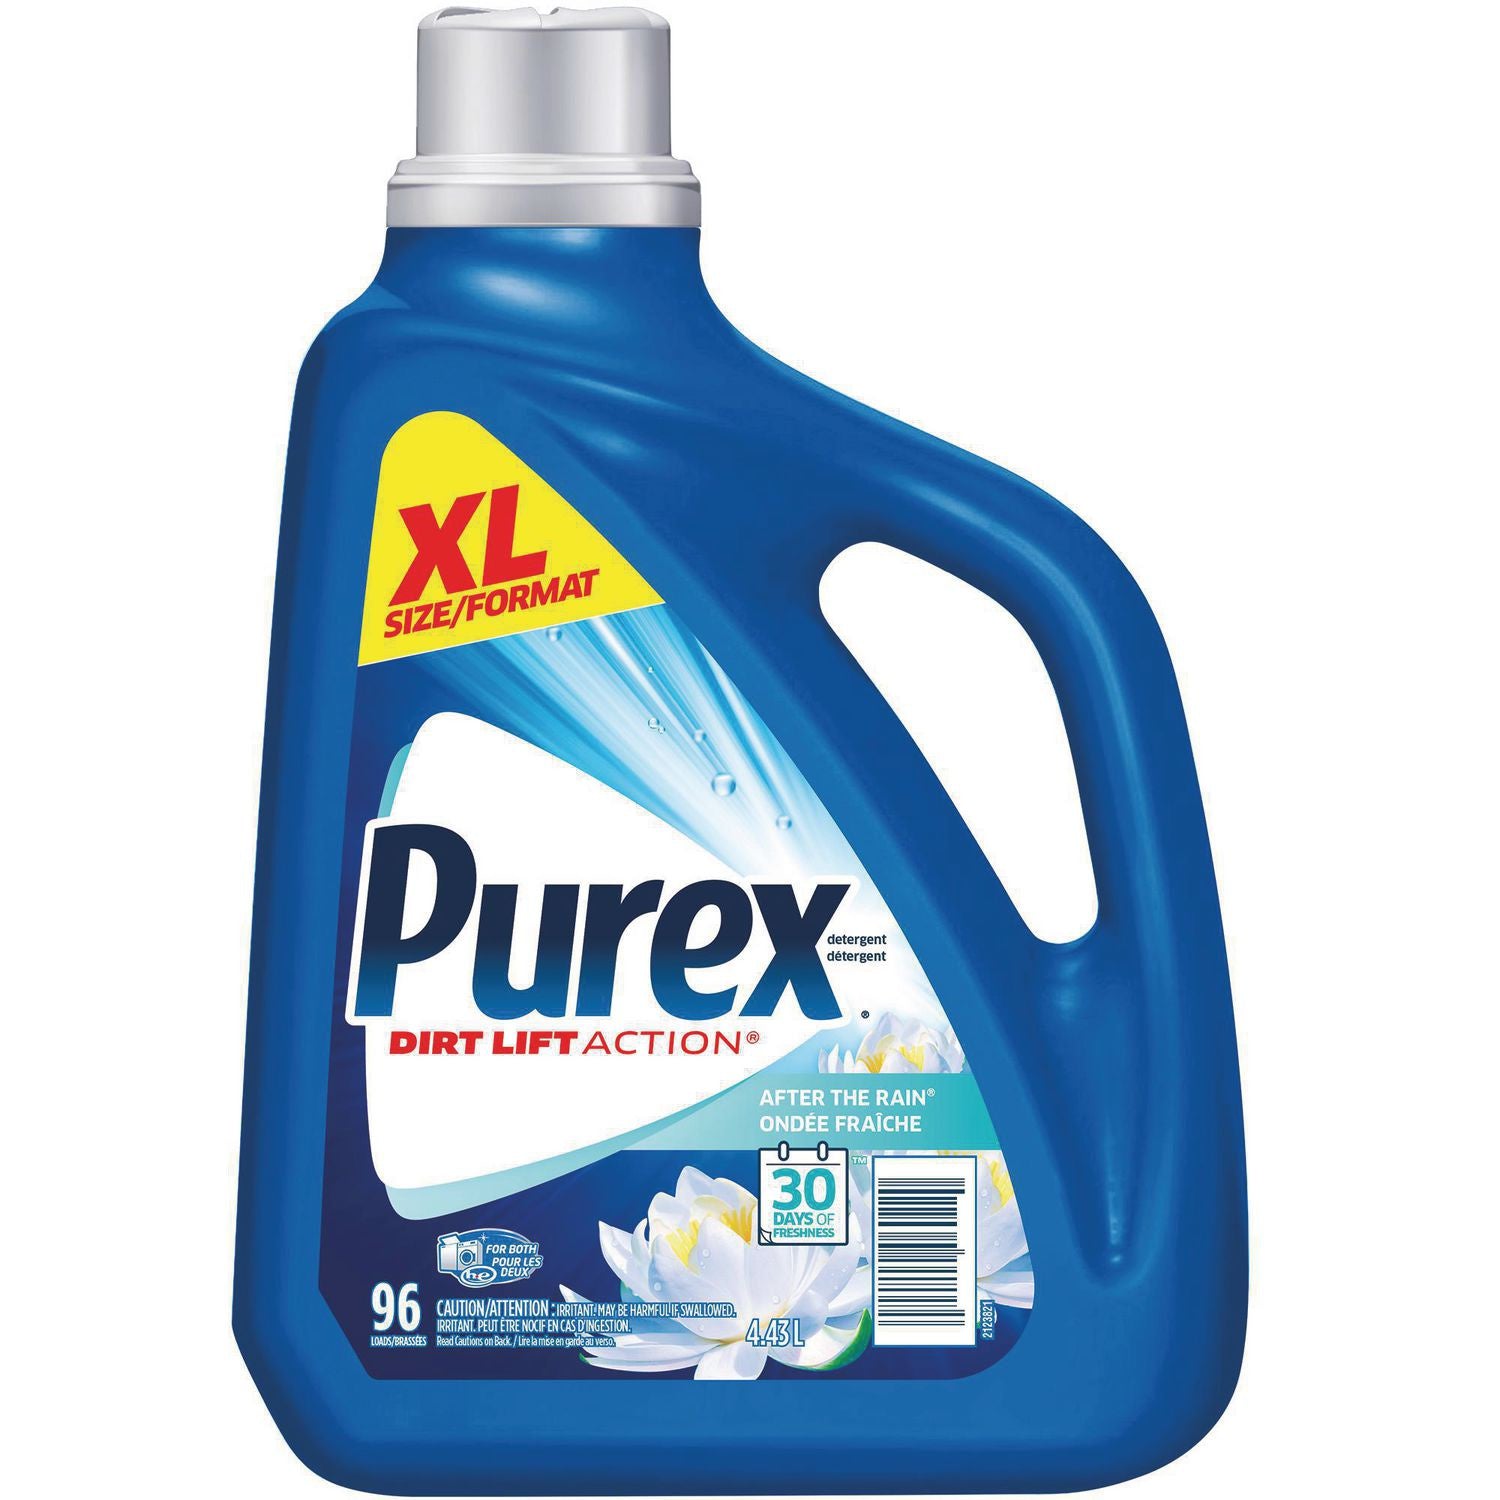 Purex Laundry Detergent, After The Rain Dirt Lift Action 96Loads, 4.43L